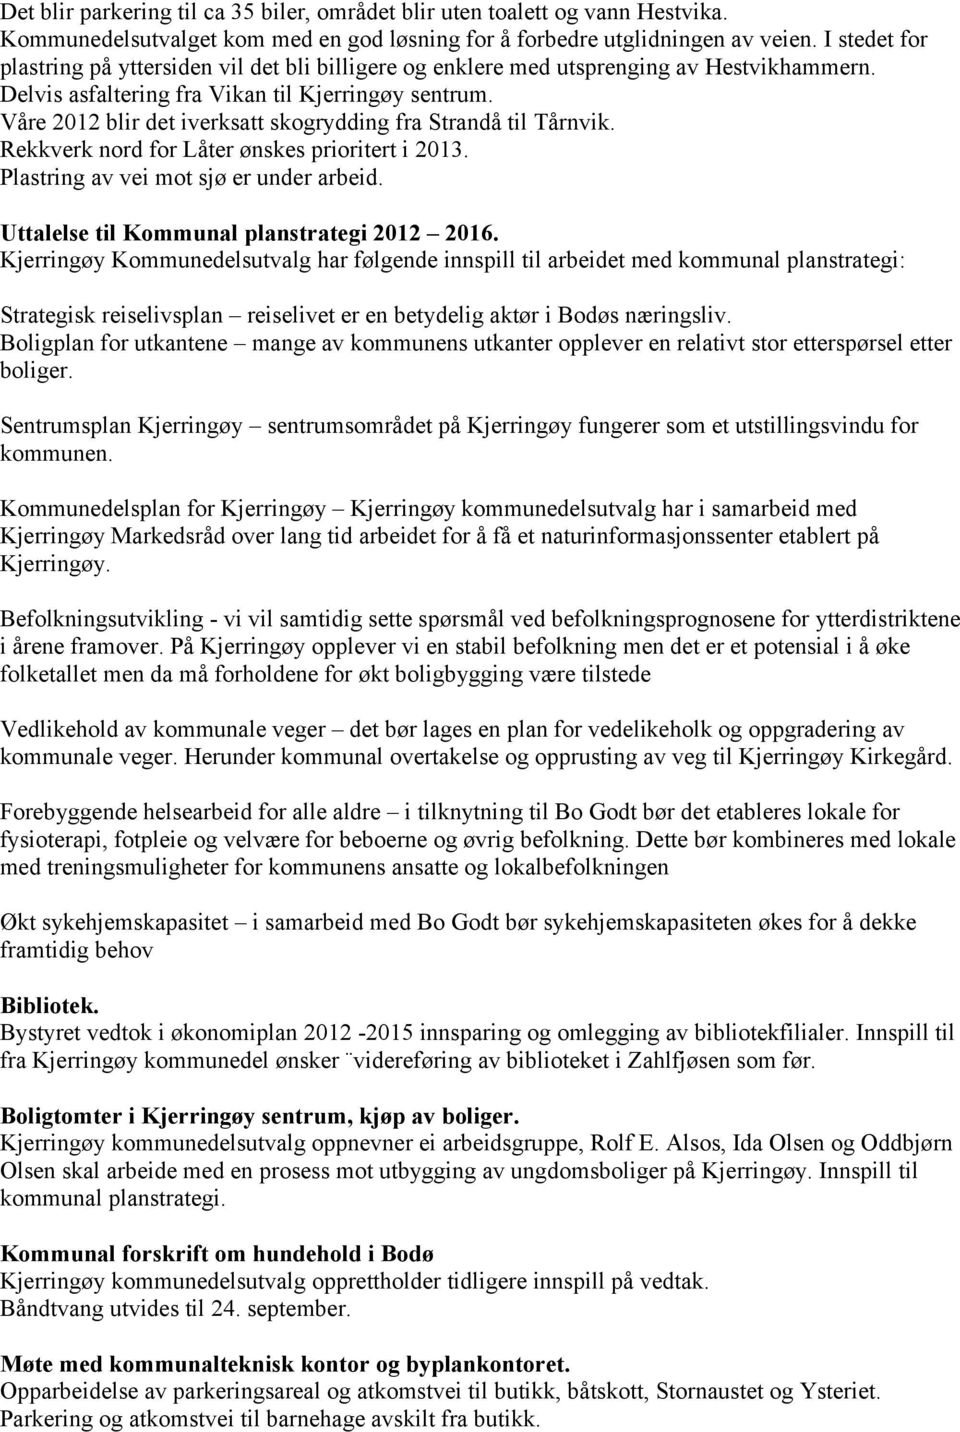 Våre 2012 blir det iverksatt skogrydding fra Strandå til Tårnvik. Rekkverk nord for Låter ønskes prioritert i 2013. Plastring av vei mot sjø er under arbeid.